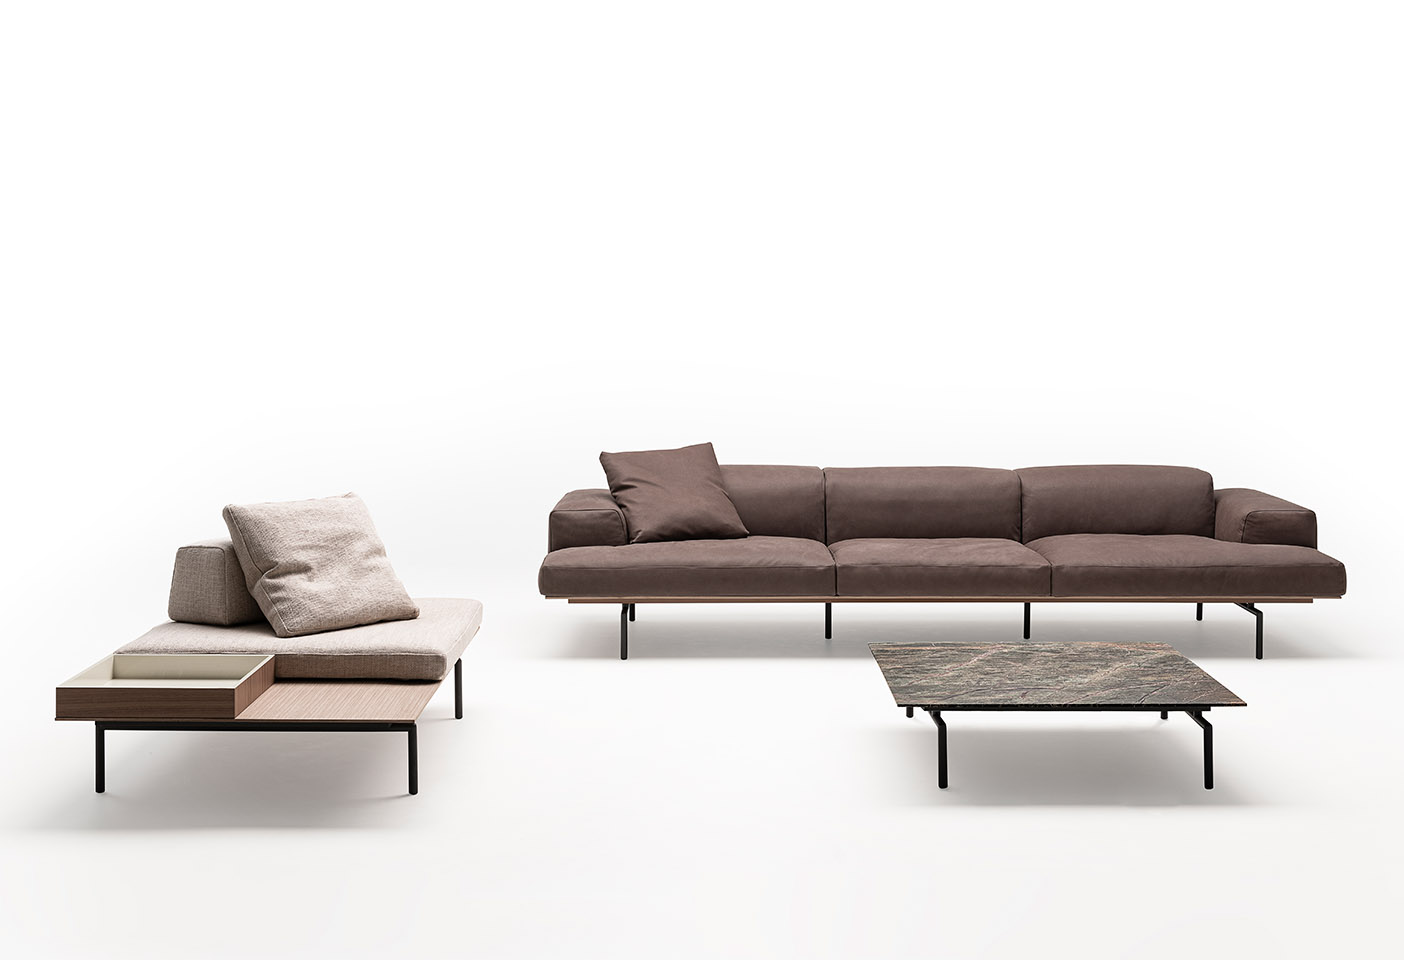 The Sumo Sofa collection designed by Piero Lissoni for Living Divani. Photo c/o Living Divani. 